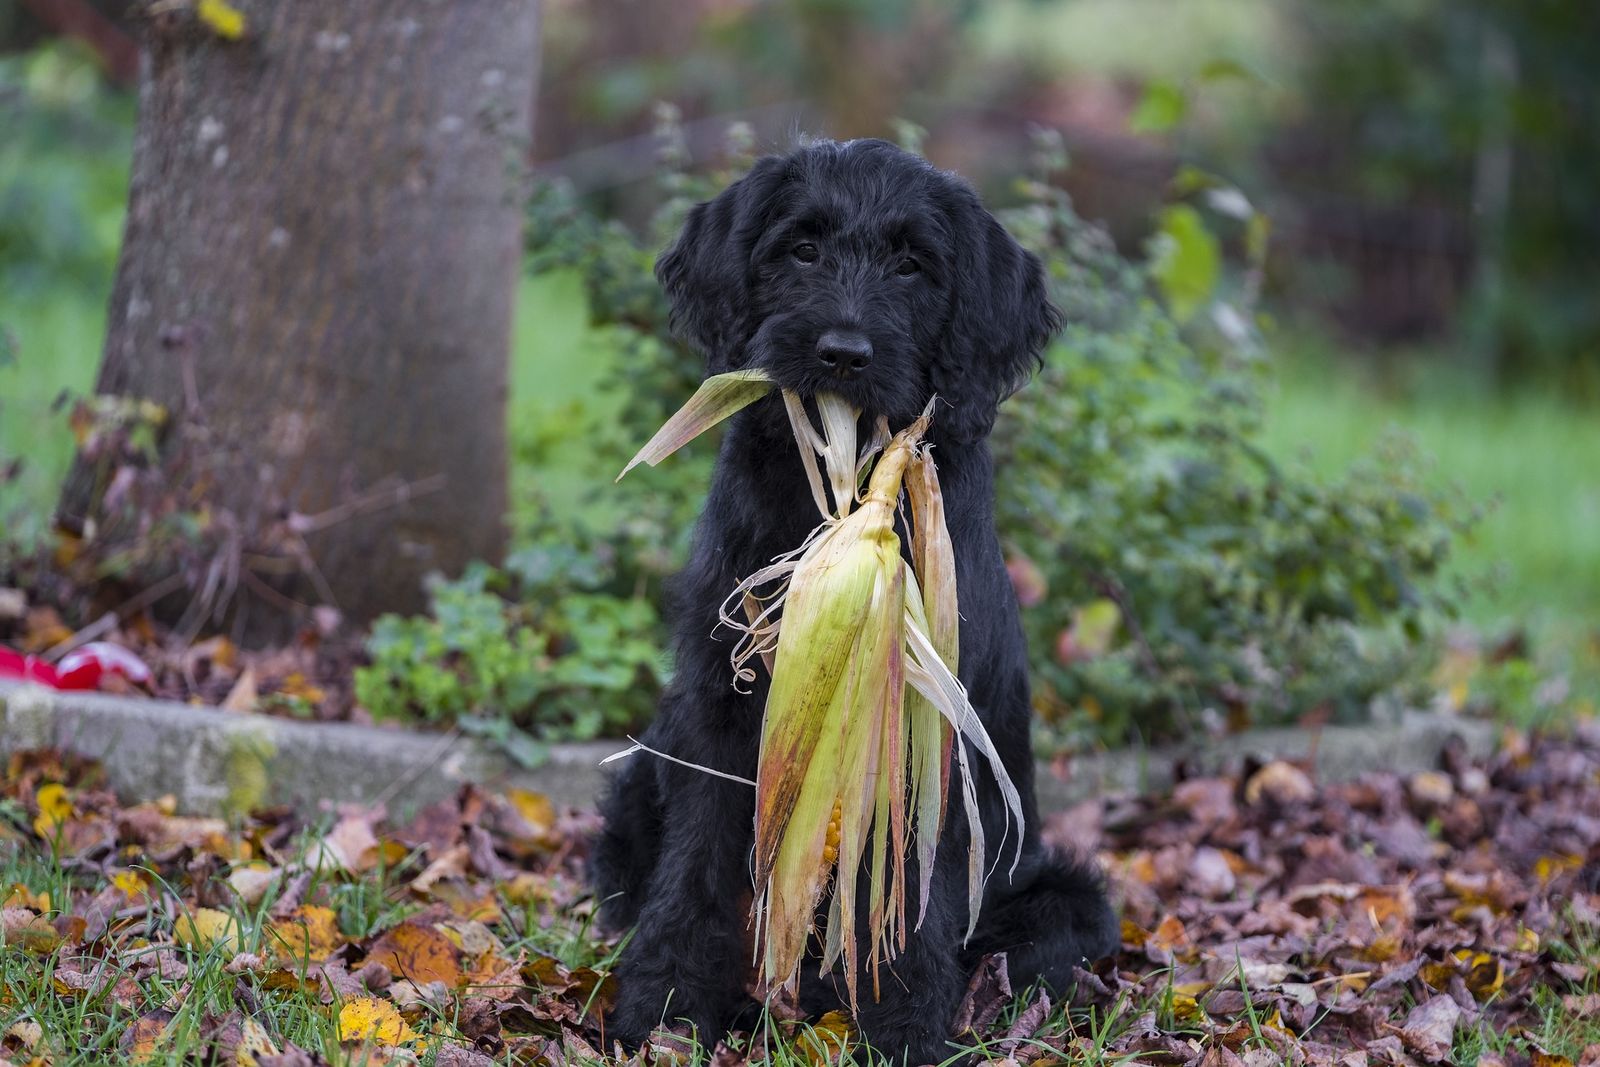 Ein schwarzer Hund der Rasse Labradoodle sitzt vor einem Baum und hat einen geschlossenen frischen Maiskolben im Maul und schaut dabei den Betrachter an